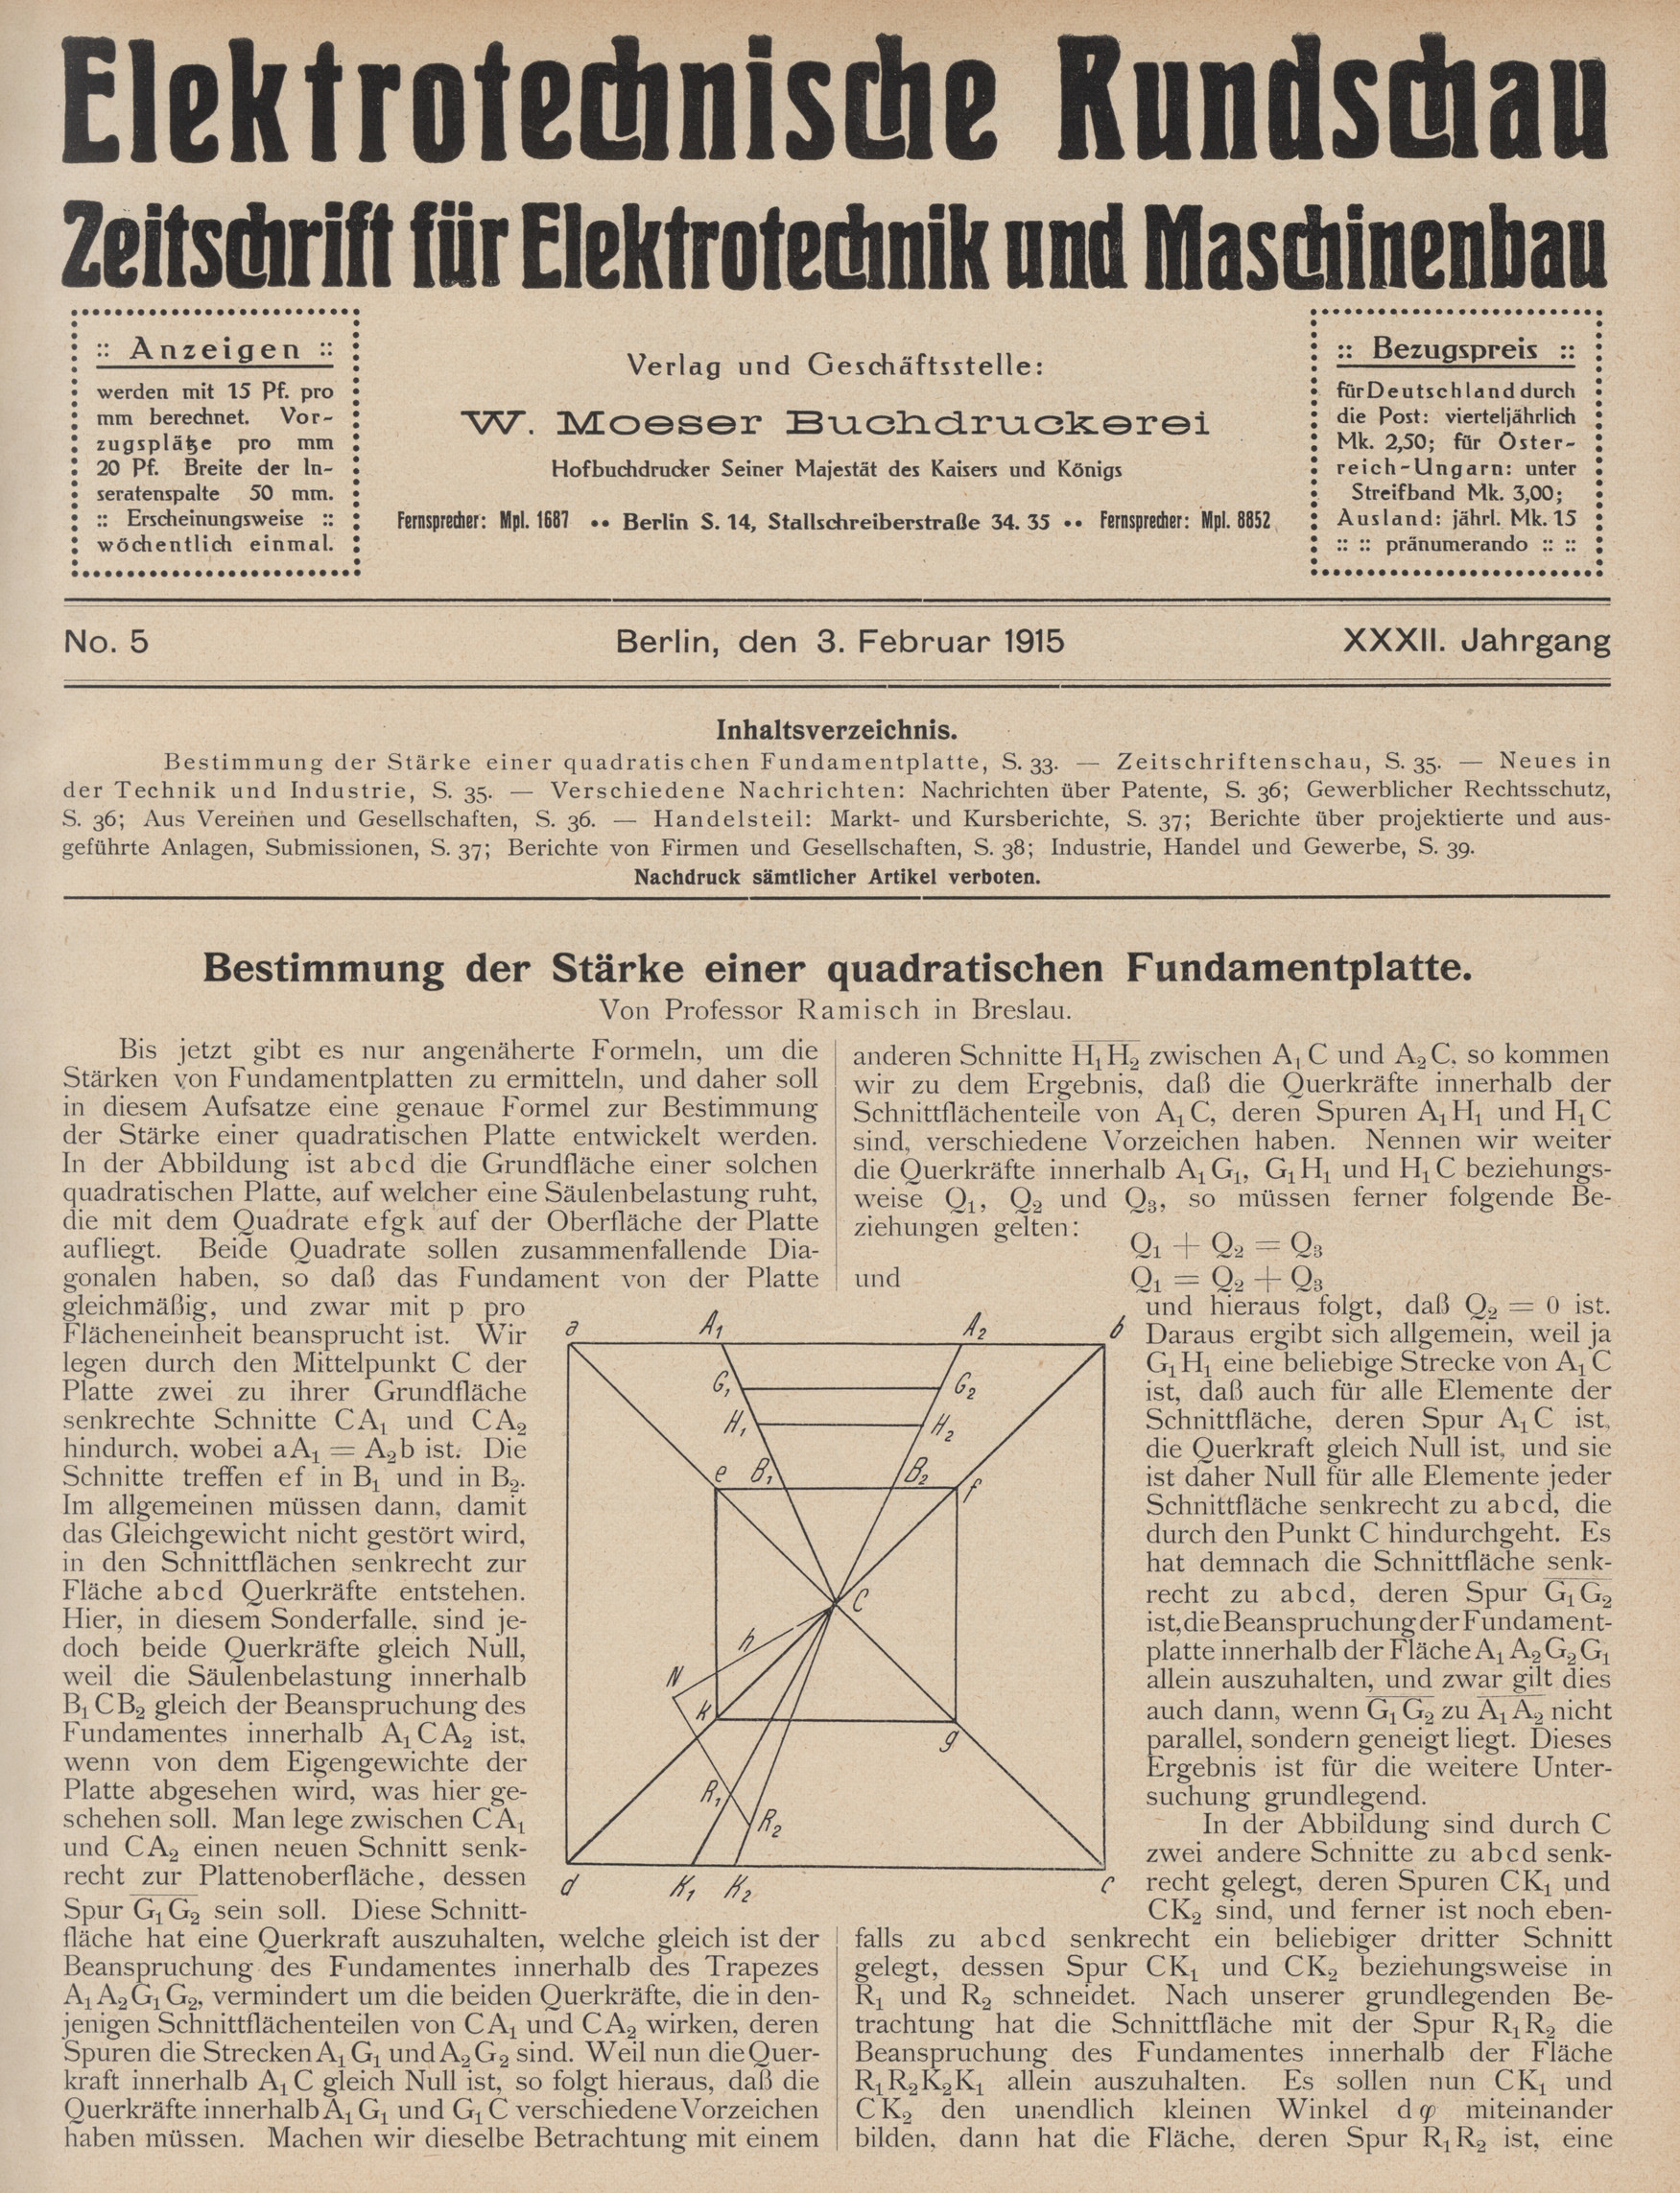 Elektrotechnische Rundschau : Zeitschrift für Elektrotechnik und Maschinenbau + Polytechnische Rundschau, No. 5, XXXII. Jahrgang